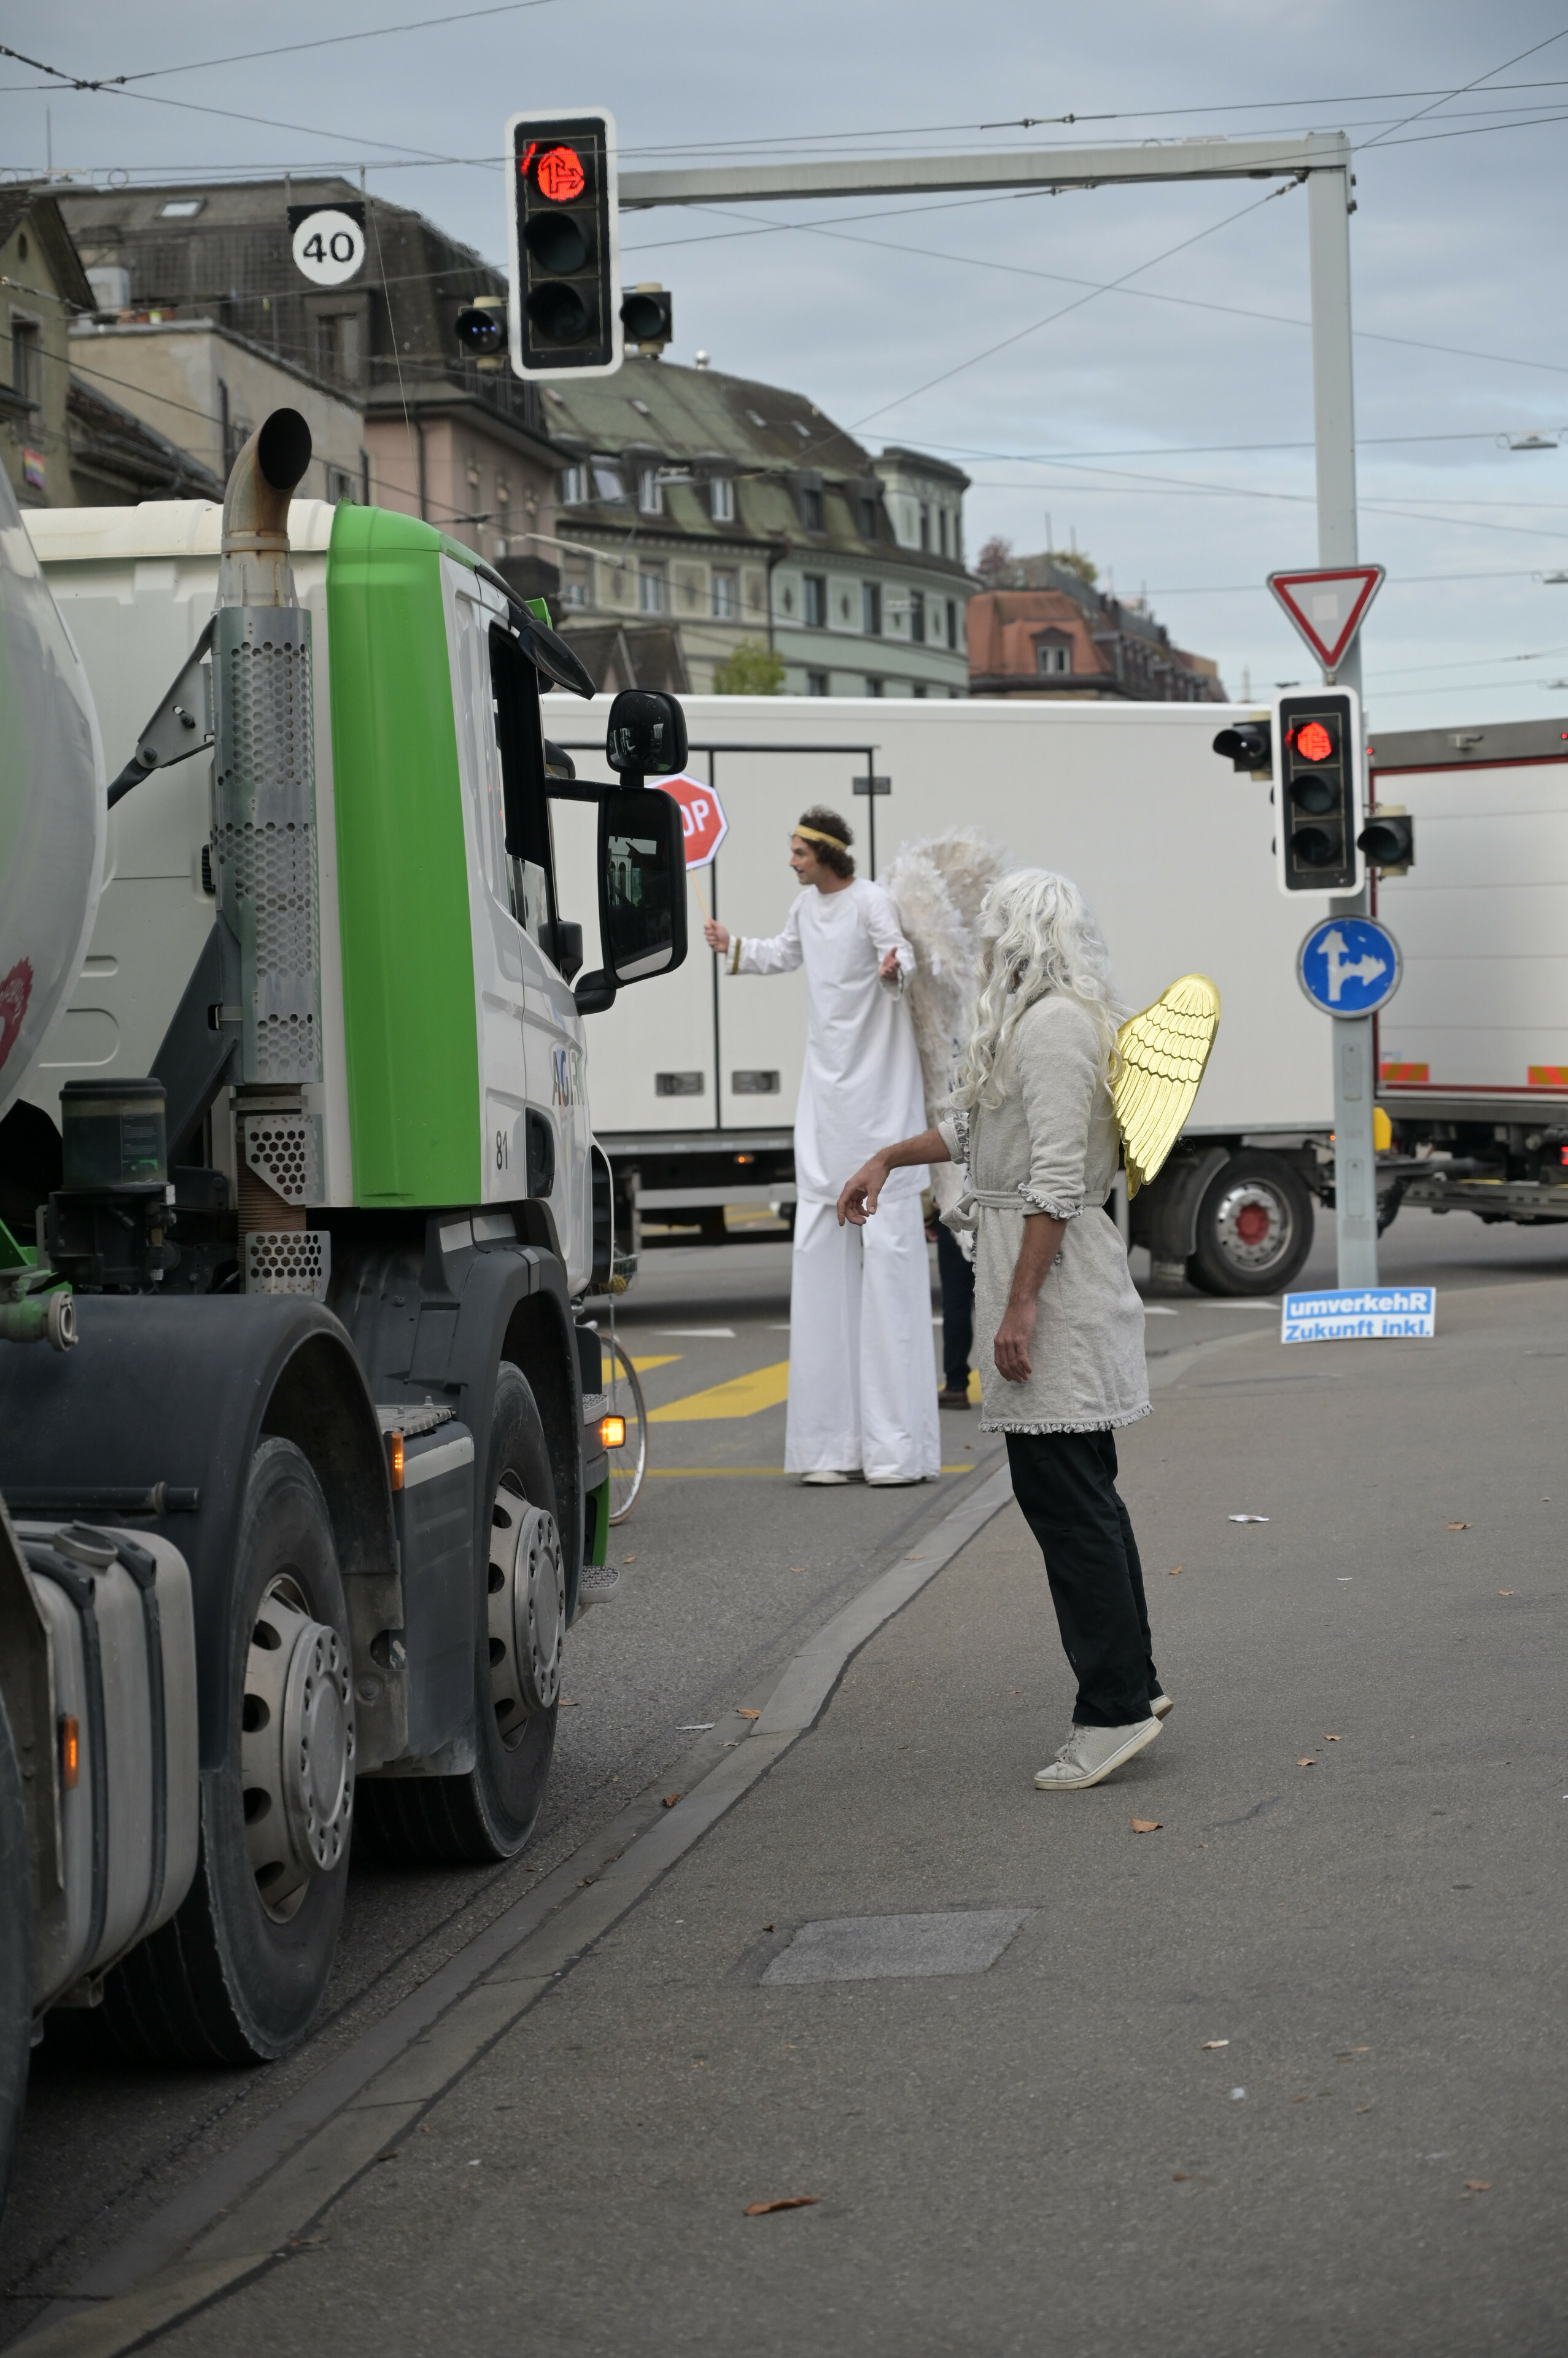 Sicherheit für Velos in Zürich: Nach einem tödlichen Unfall